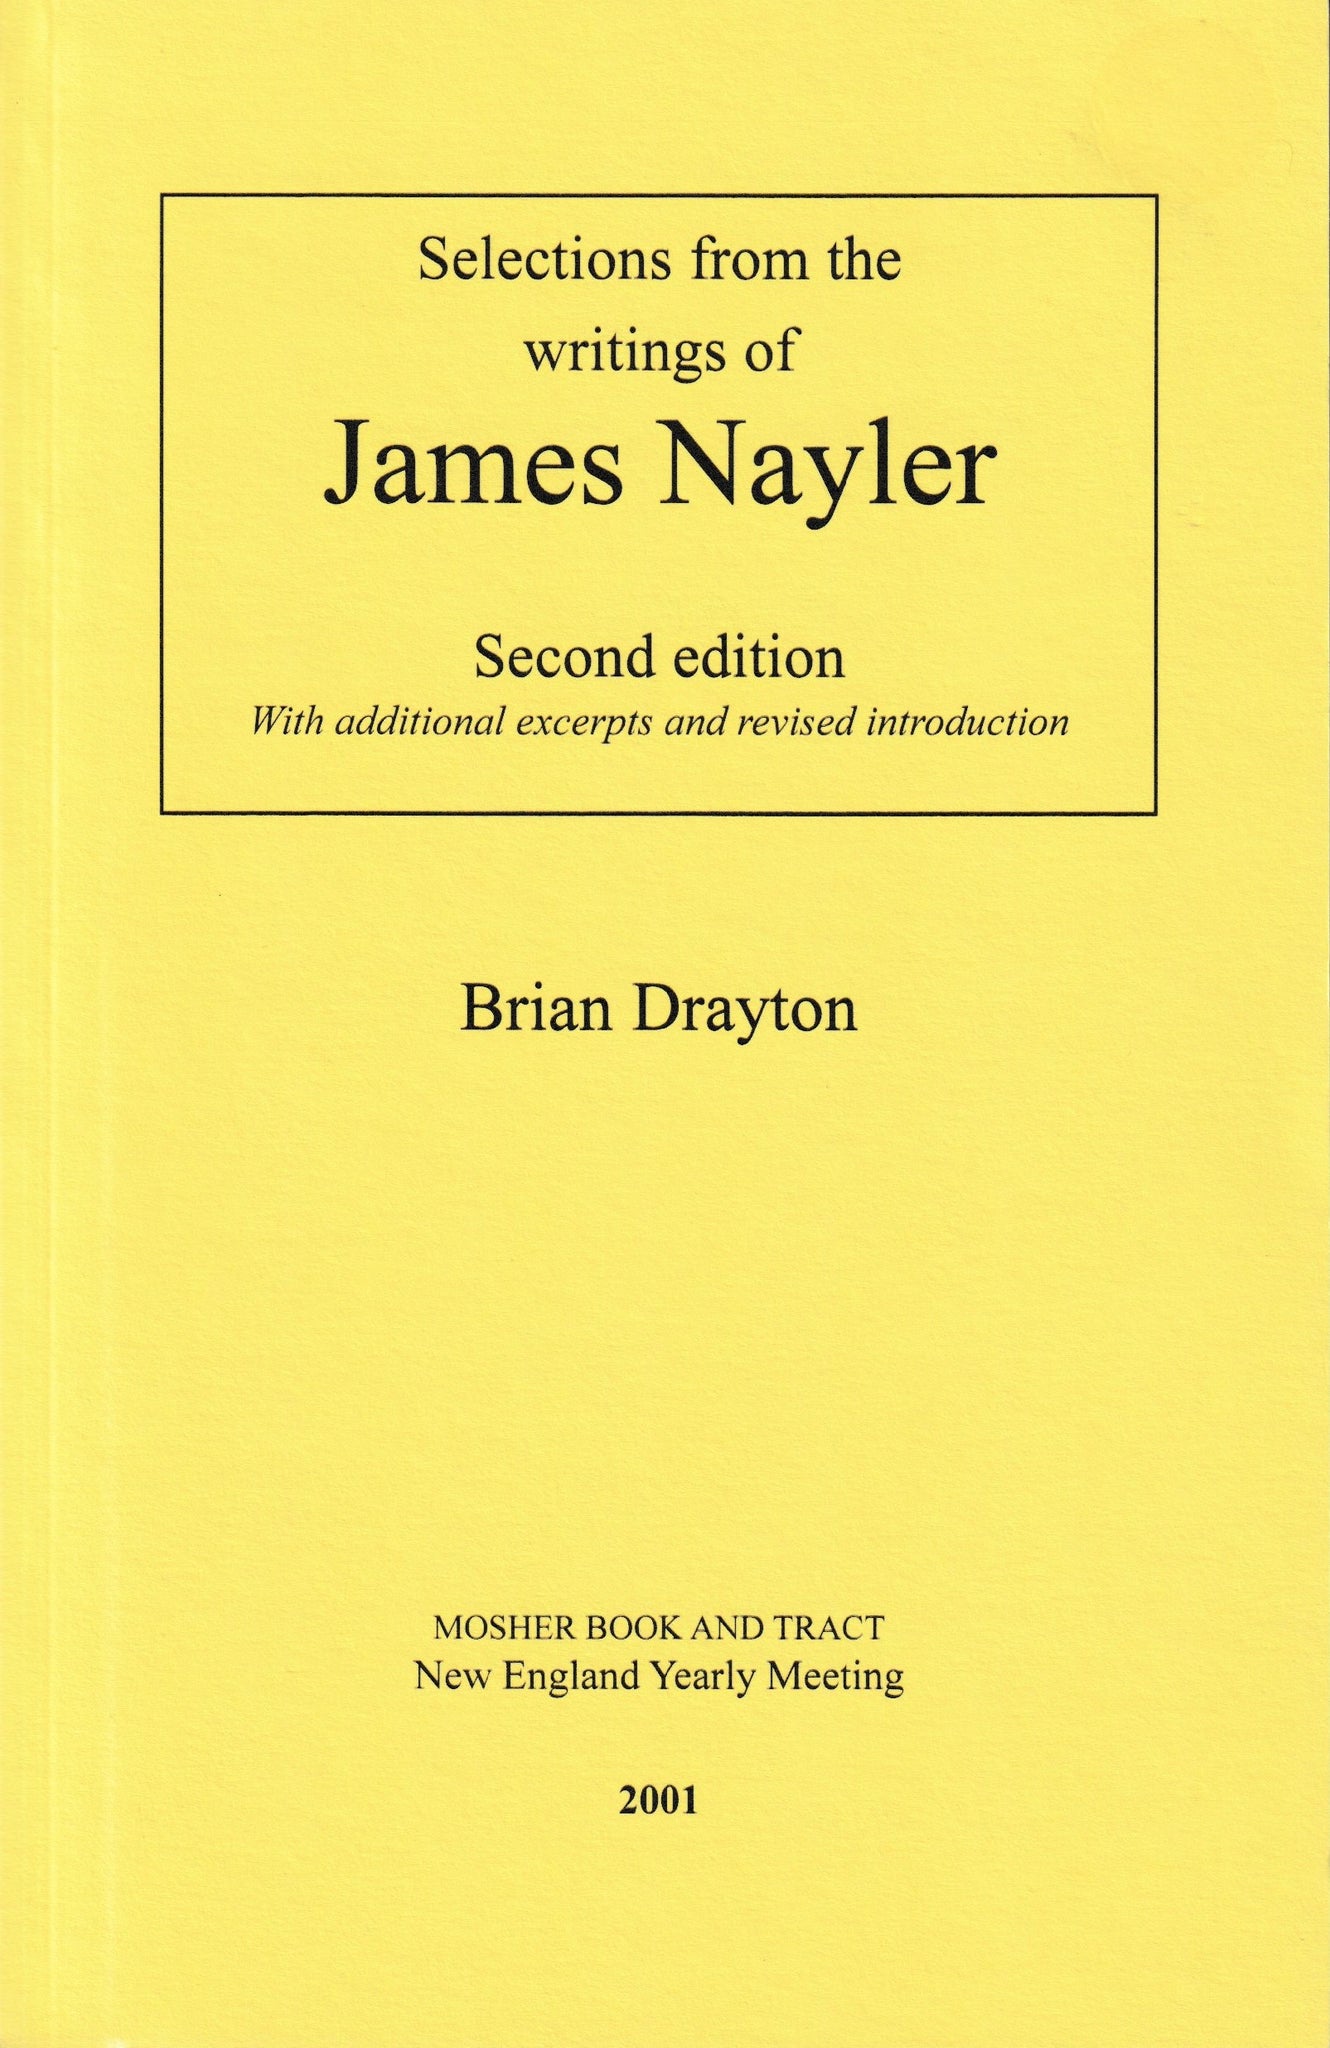 James Nayler: Selected Writings